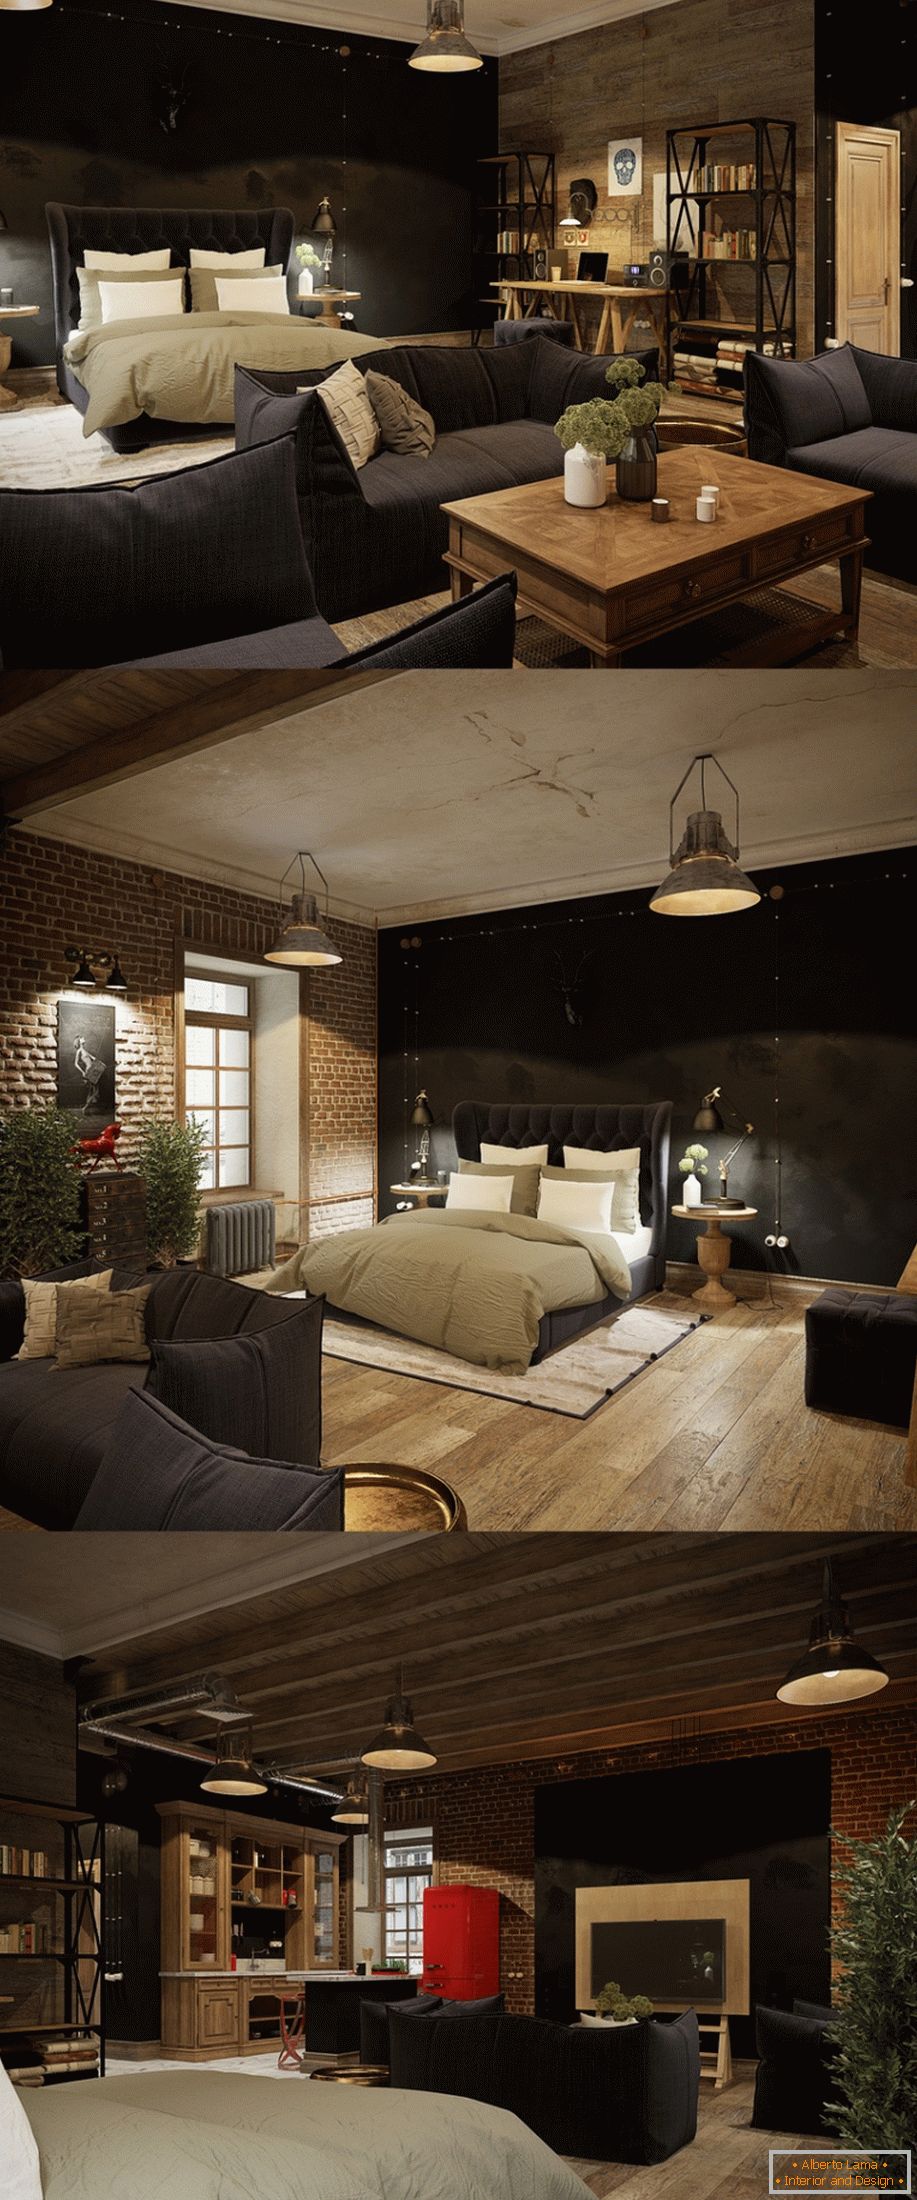 Ejemplo de diseño interior de una habitación pequeña en la foto